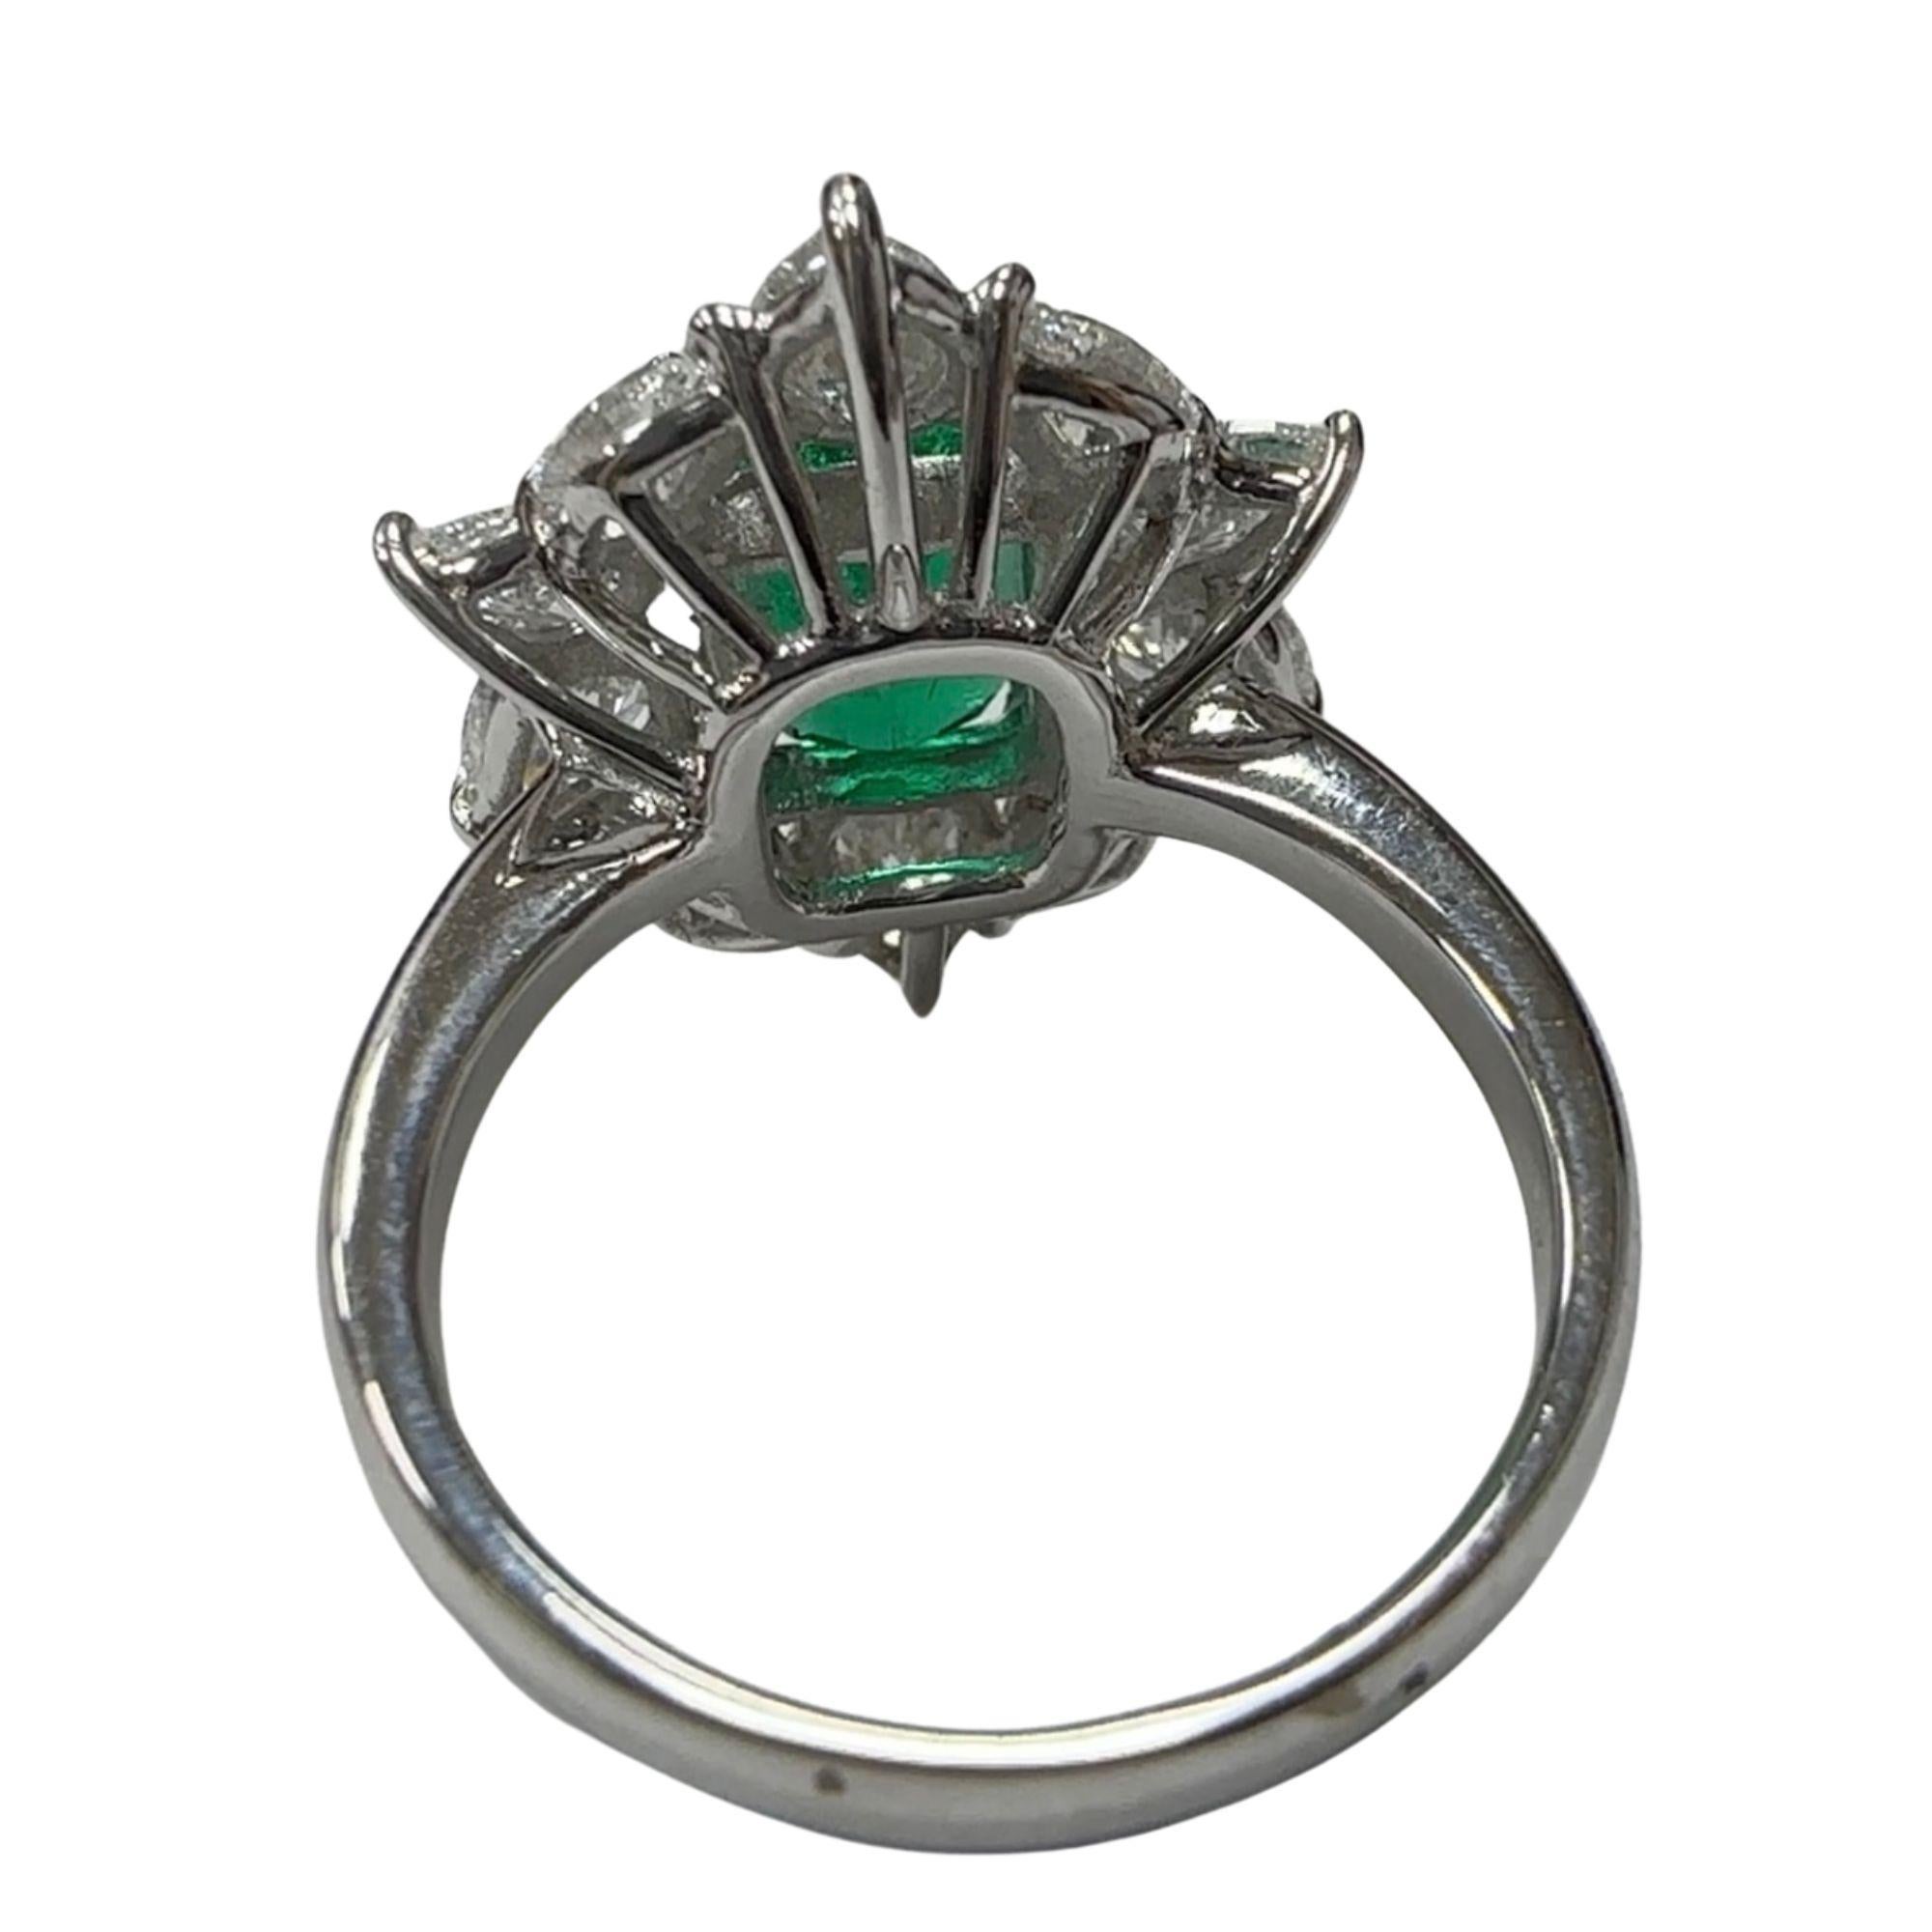 Enthüllen Sie die fesselnde Anziehungskraft dieses 18-karätigen Rings mit Diamanten und Smaragden, ein Zeugnis dauerhafter Schönheit und Handwerkskunst. Der Ring ist in sehr gutem Vintage-Zustand mit leichten Oberflächenabnutzungen, die von